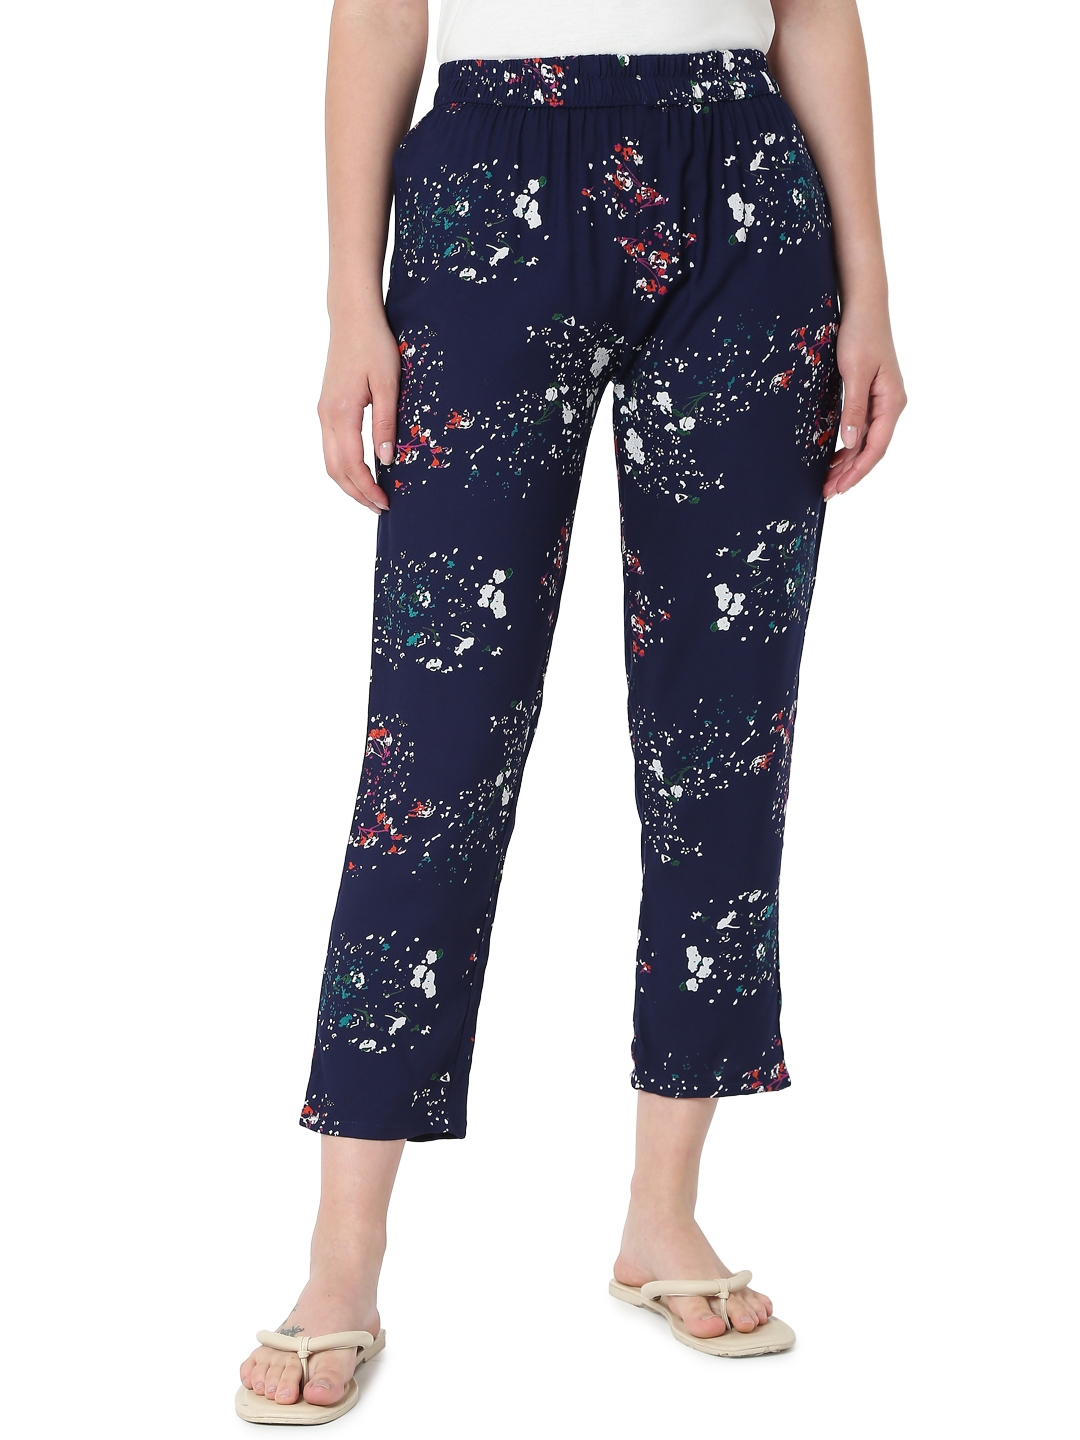 Smarty Pants | Smarty Pants women's cotton blue color floral print pajama. 